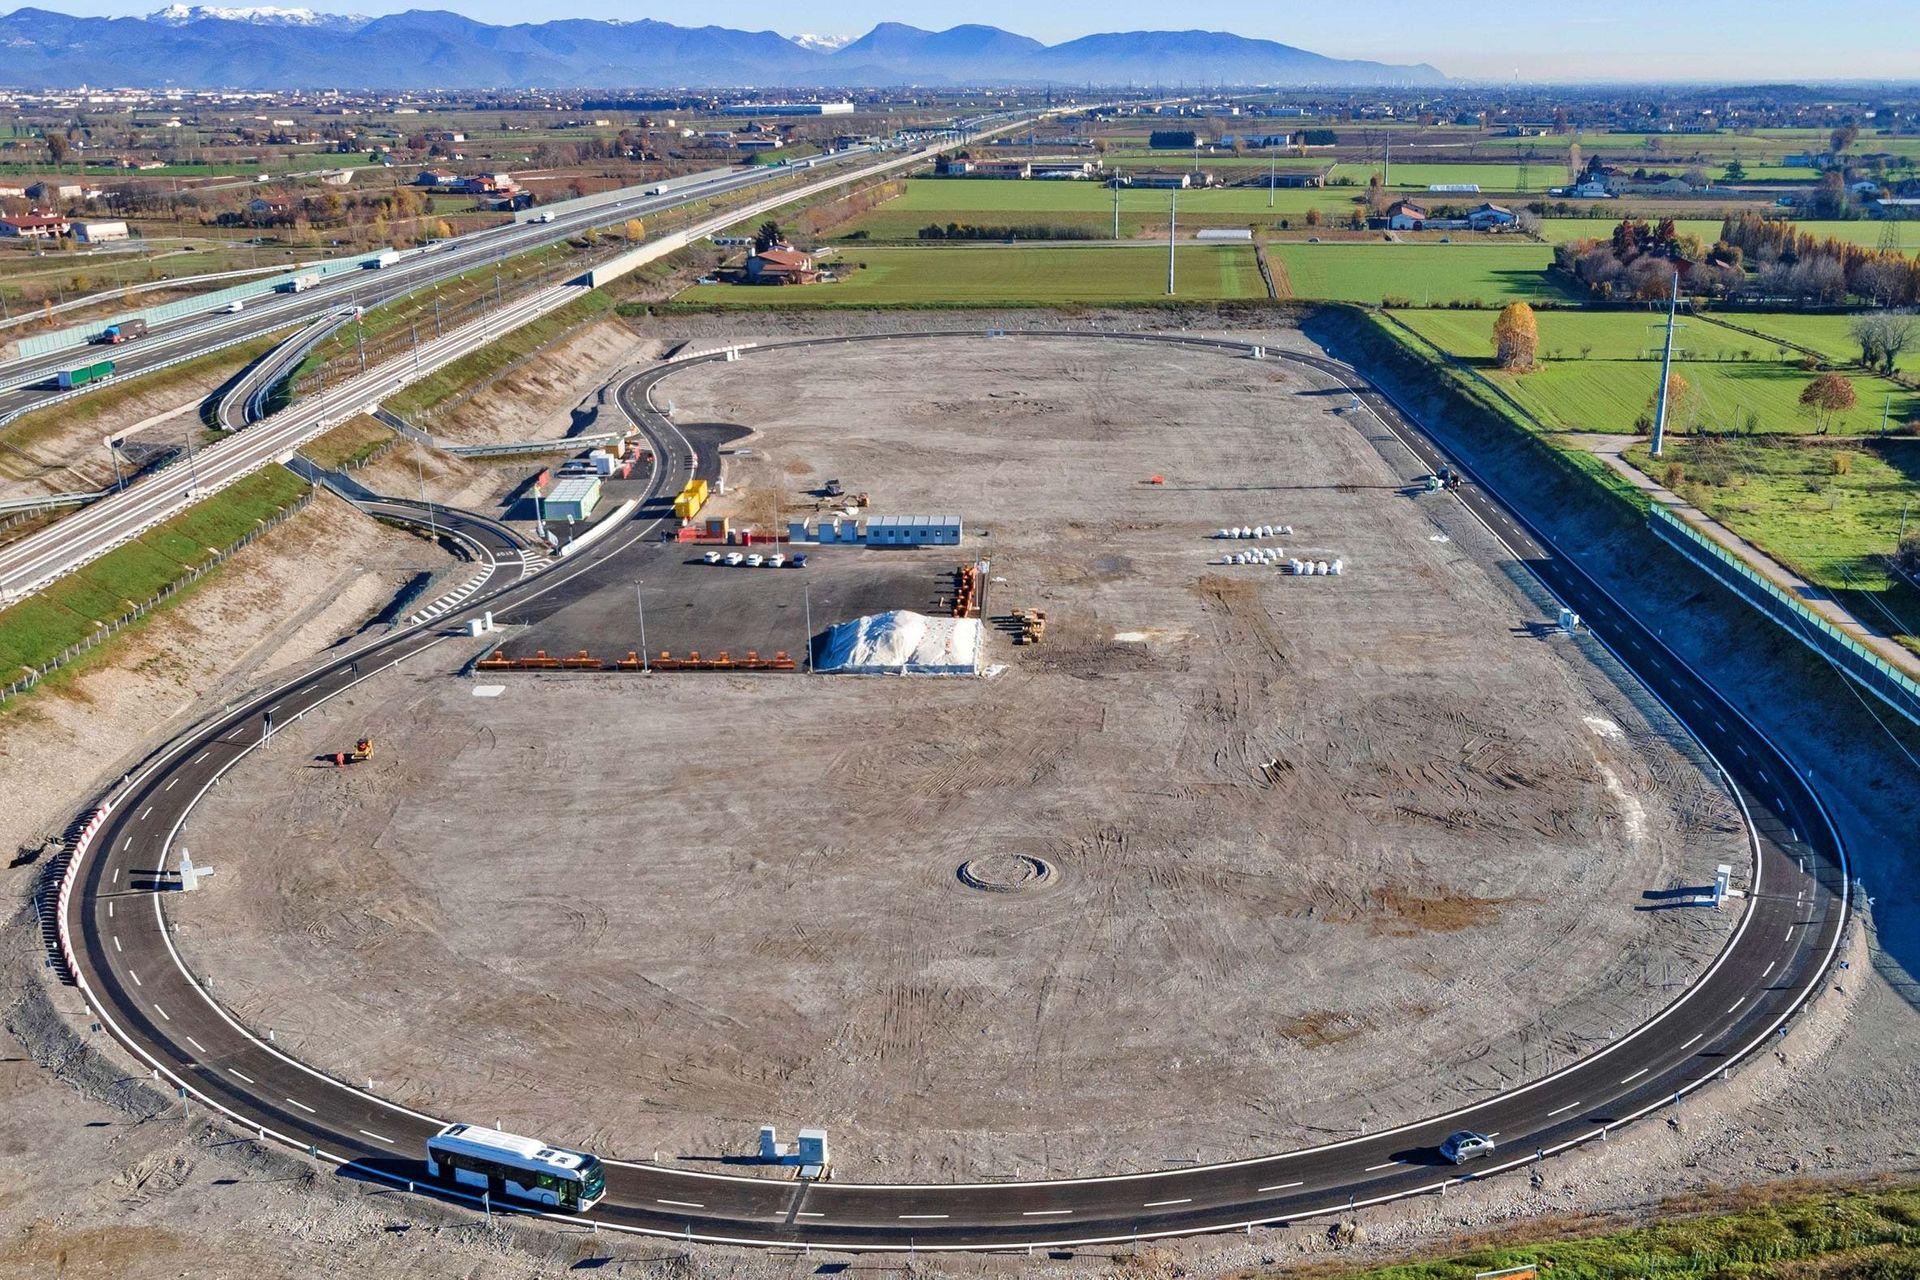 La "Arena del Futuro" sorge a margine dell'Autostrada A35 italiana fra Brescia, Bergamo e Milano